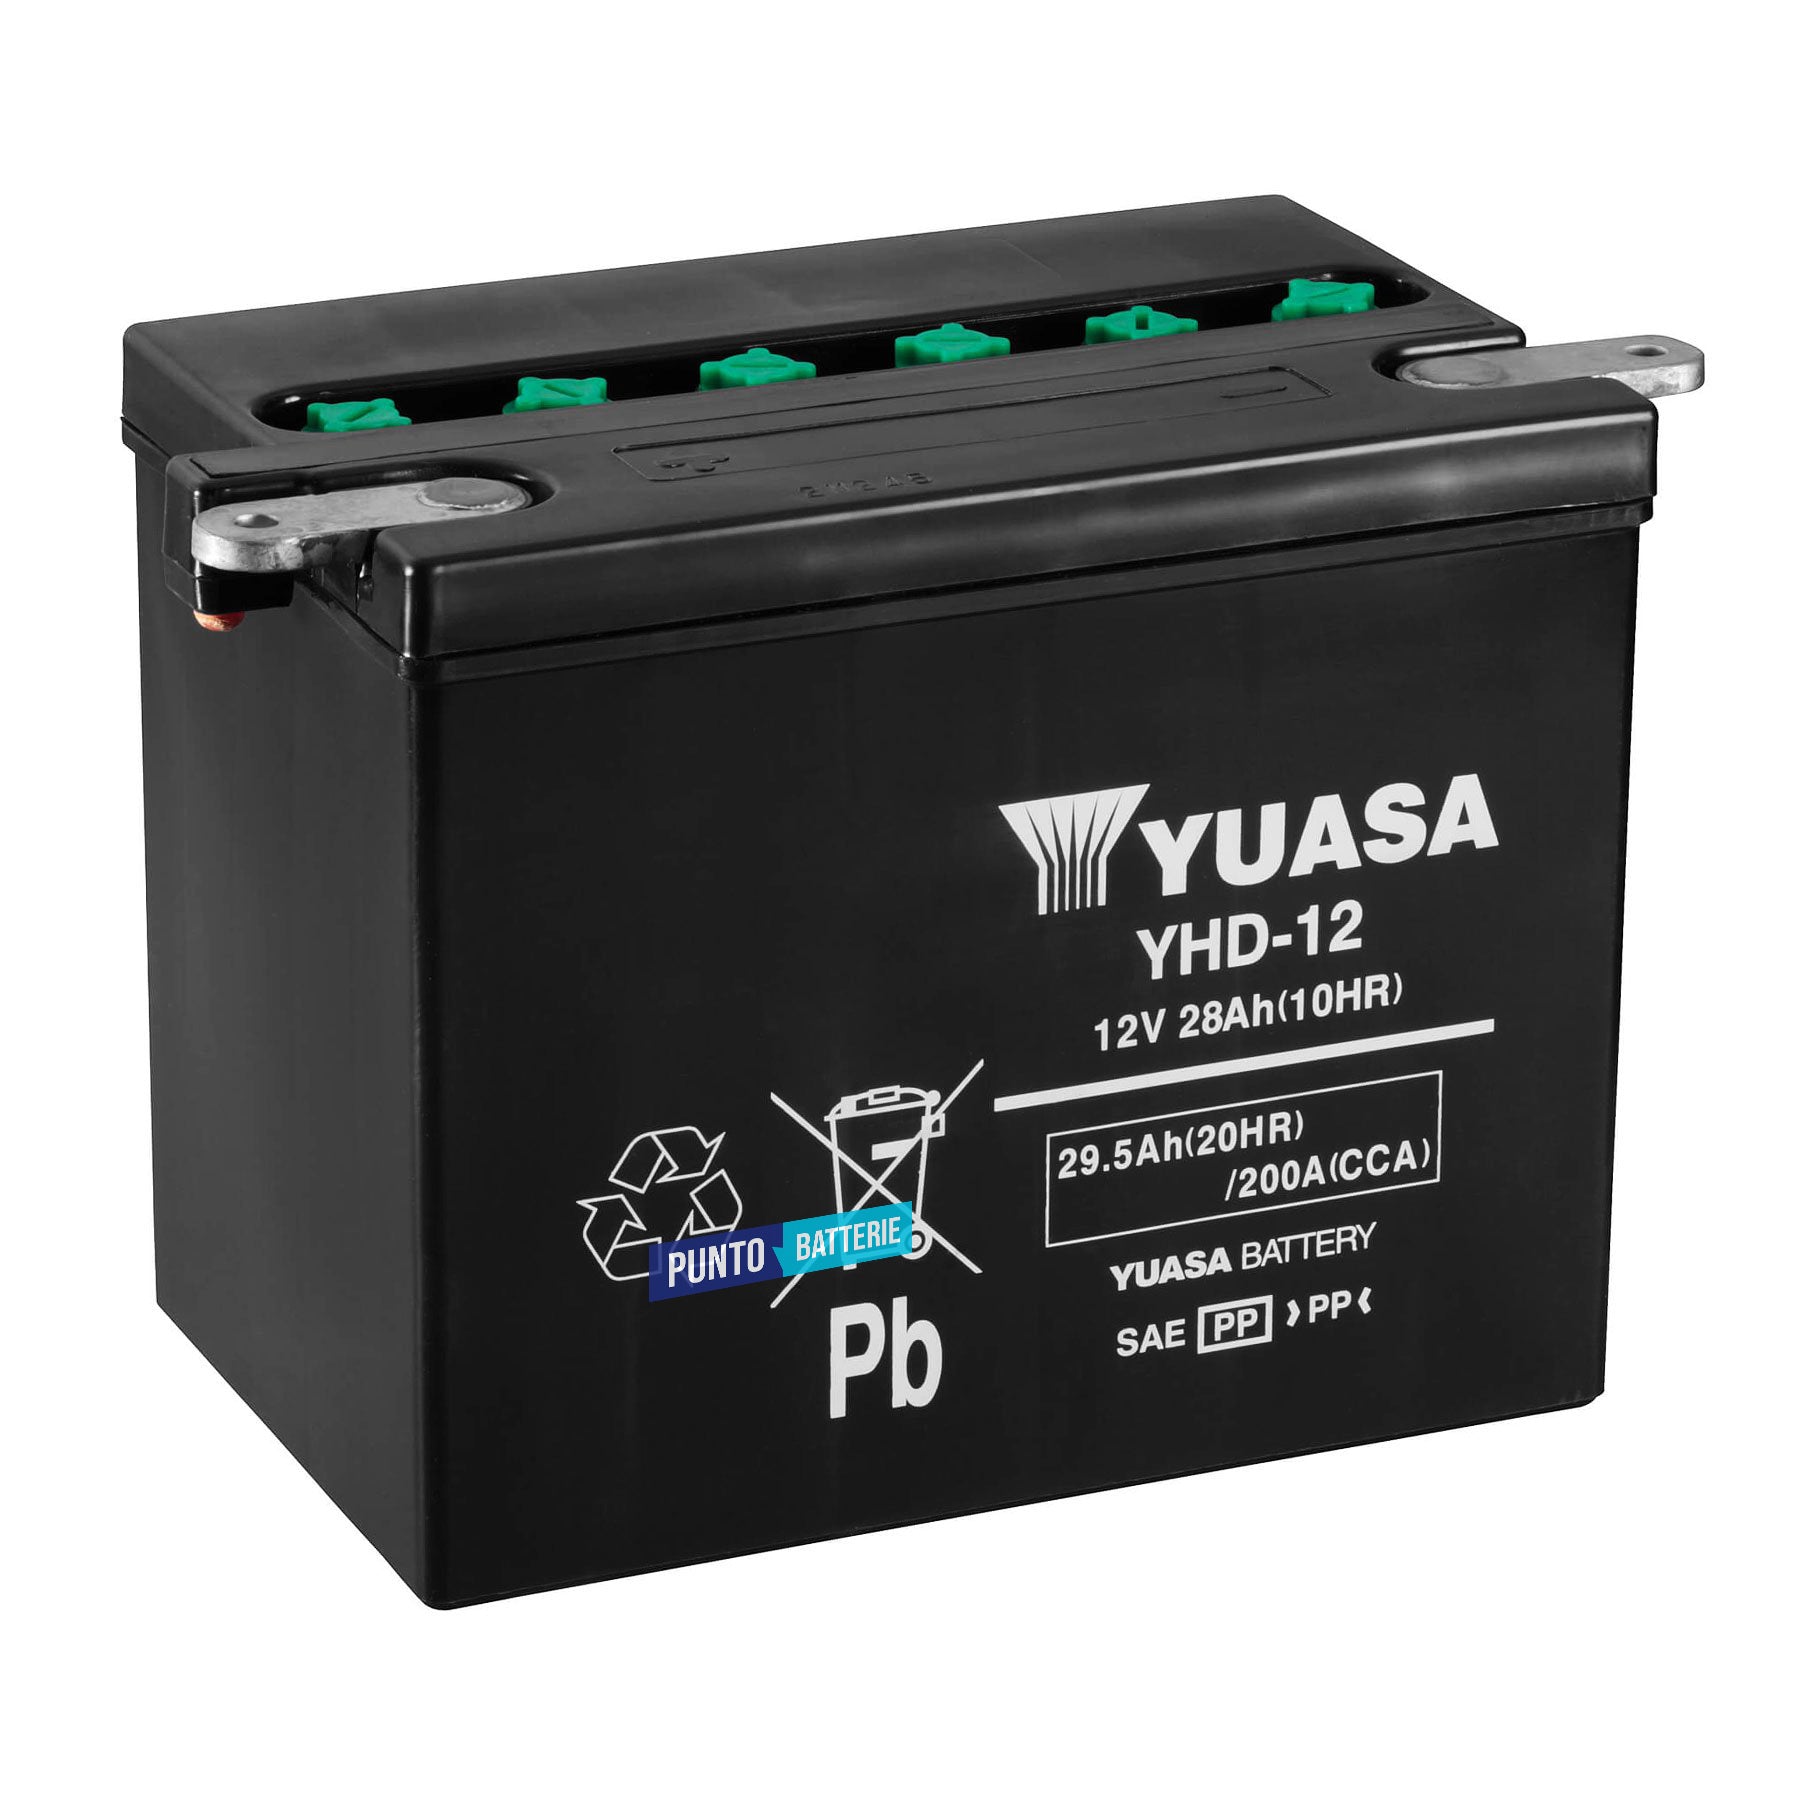 Batteria originale Yuasa Conventional YHD-12, dimensioni 206 x 133 x 165, polo positivo a sinistra, 12 volt, 29 amperora, 200 ampere. Batteria per moto, scooter e powersport.